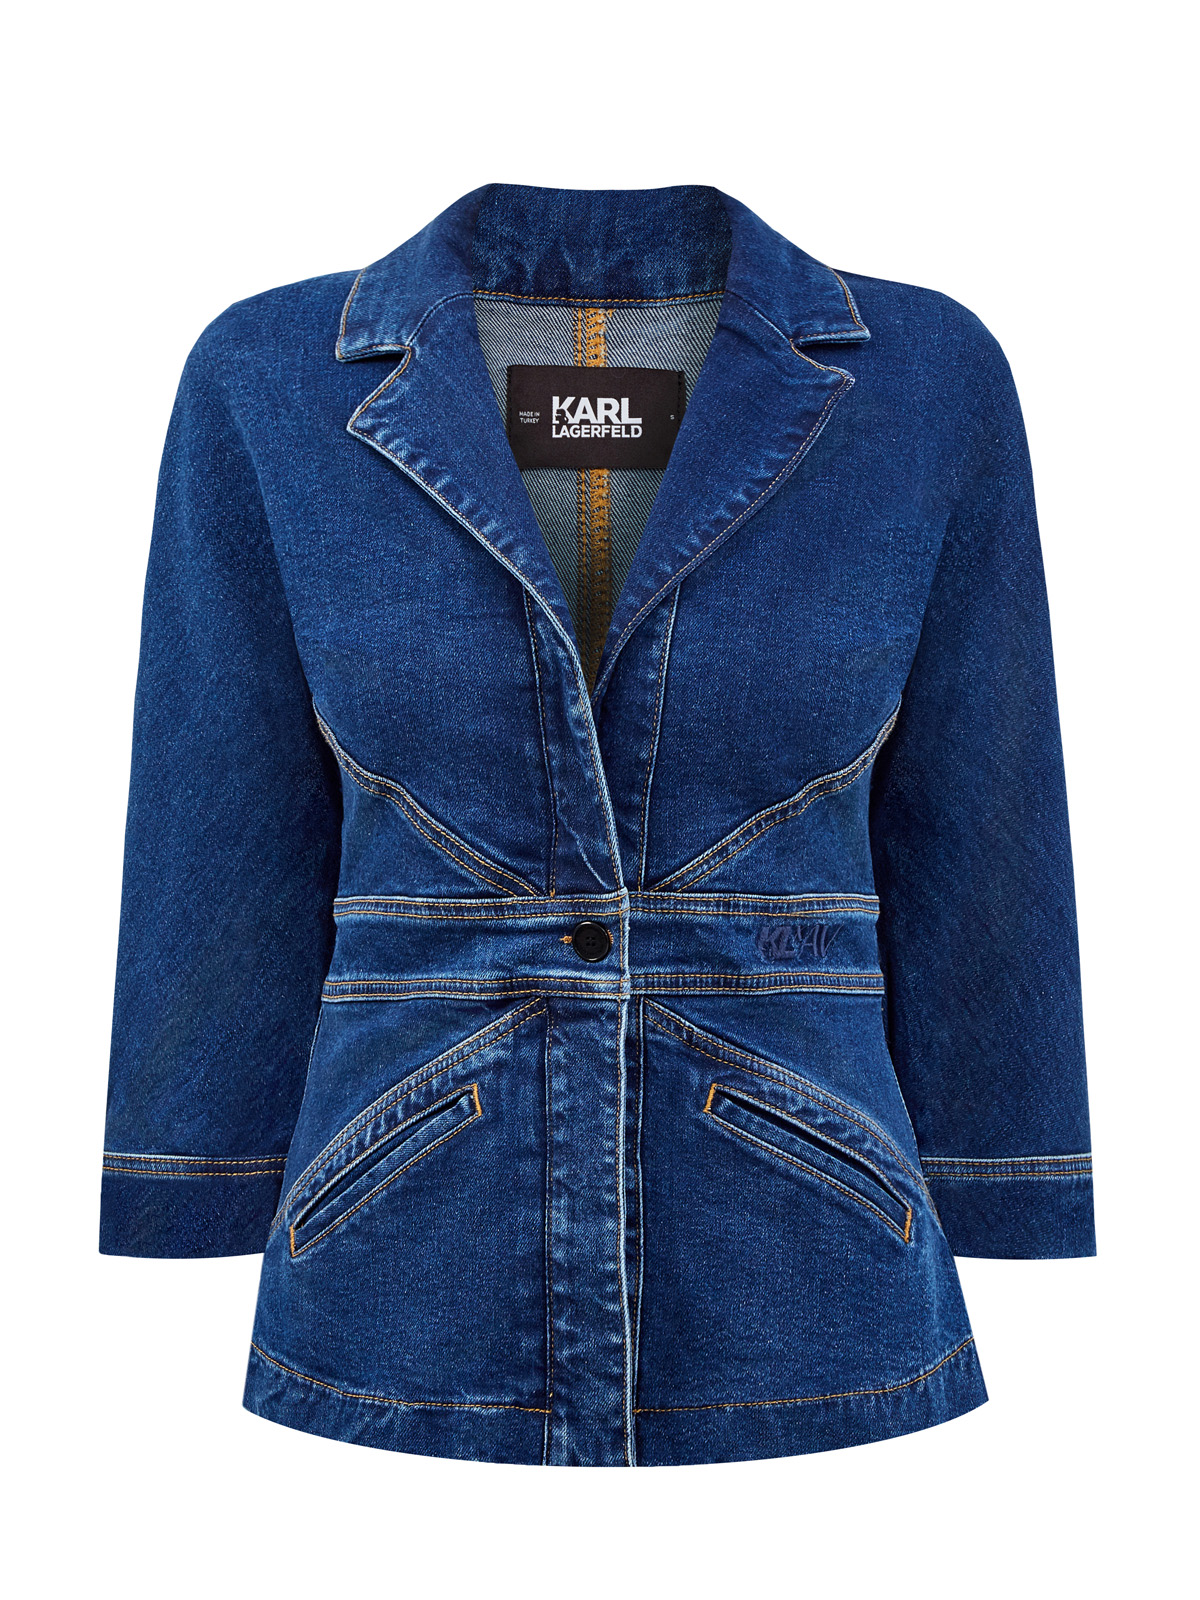 Приталенный джинсовый жакет KARL X AMBER VALLETTA KARL LAGERFELD, цвет синий, размер M;L;XL;S - фото 1